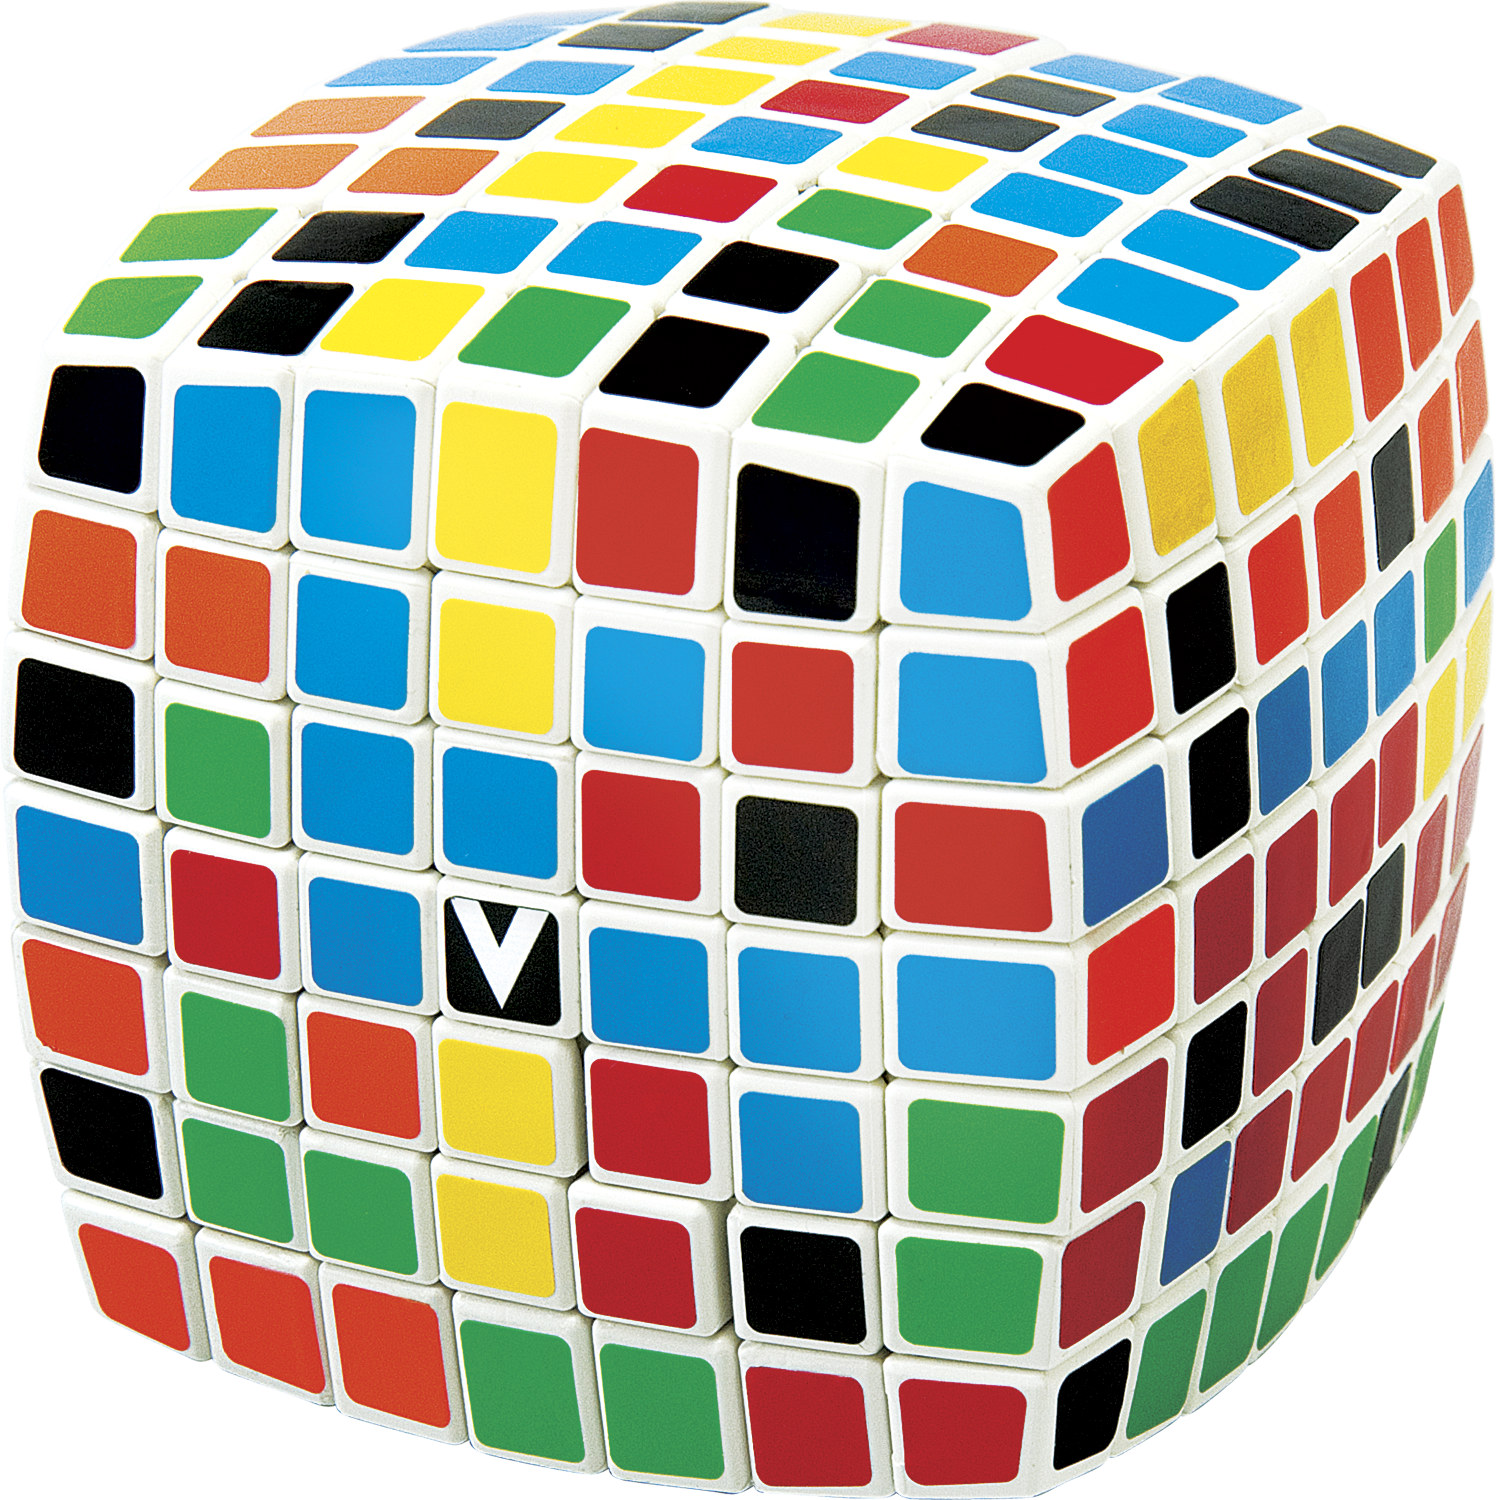 V-cube - V Cube 7 Multicolor (1496x1500), Png Download